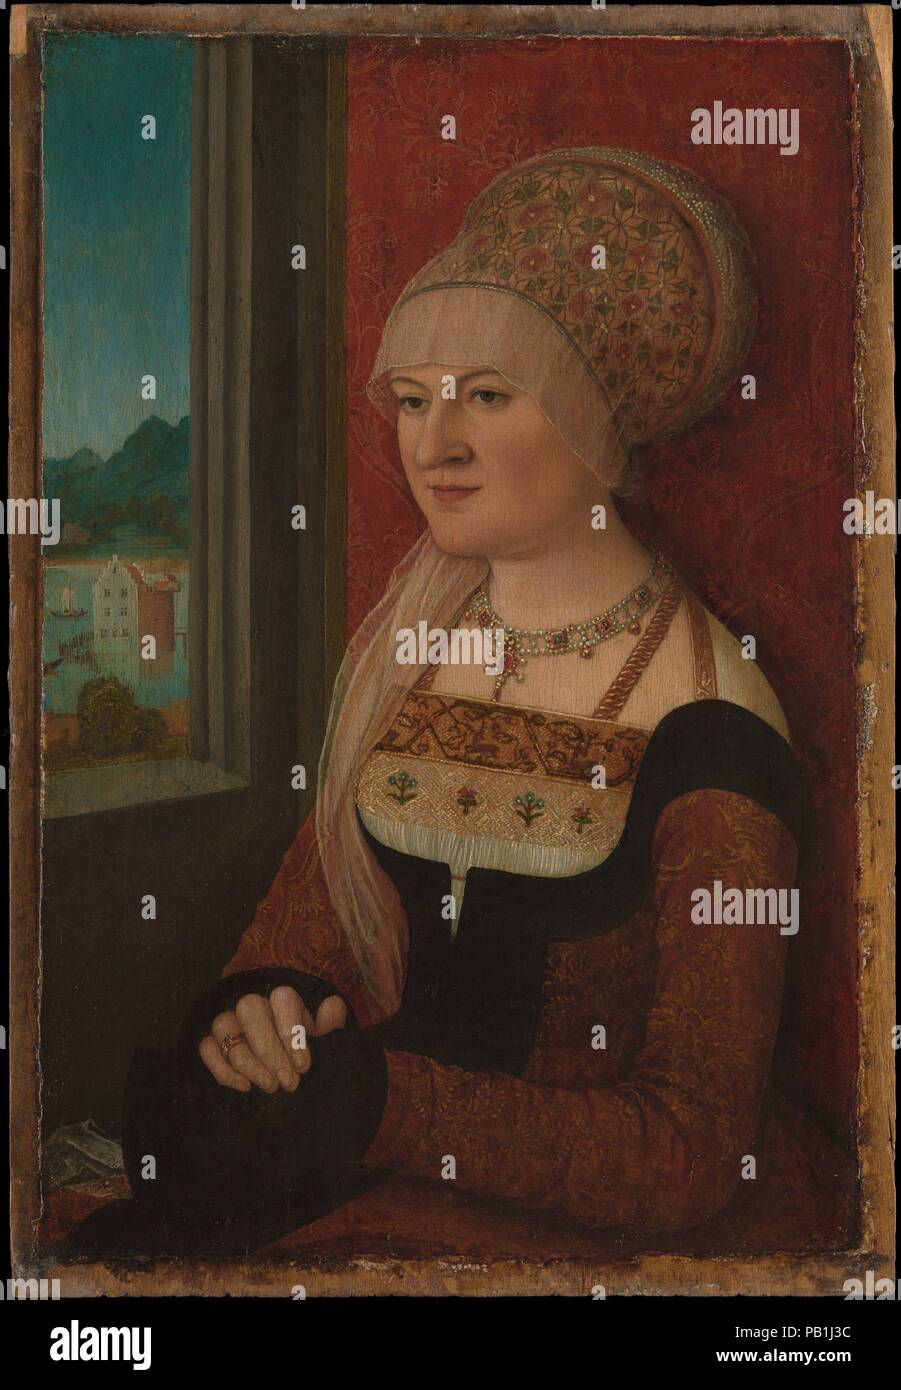 Portrait d'une femme. Artiste : Bernhard Strigel (allemand, Memmingen Memmingen 1460-1528). Dimensions : 15 1/8 x 10 1/2 in. (38,4 x 26,7 cm). Date : ca. 1510-15. Bernhard Strigel appartenait à une famille d'artistes qui ont fleuri après le milieu du xve siècle dans la ville de Memmingen, près de la frontière suisse. Dans les deux premières décennies du 16e siècle, il a produit un certain nombre de portraits de dames en robe extravagante placé avant un décoratif brocart pendaison avec une fenêtre ouverte en vue d'un paysage. La jeune femme dans cette (probablement) portrait indépendant n'a pas été identifié, Banque D'Images